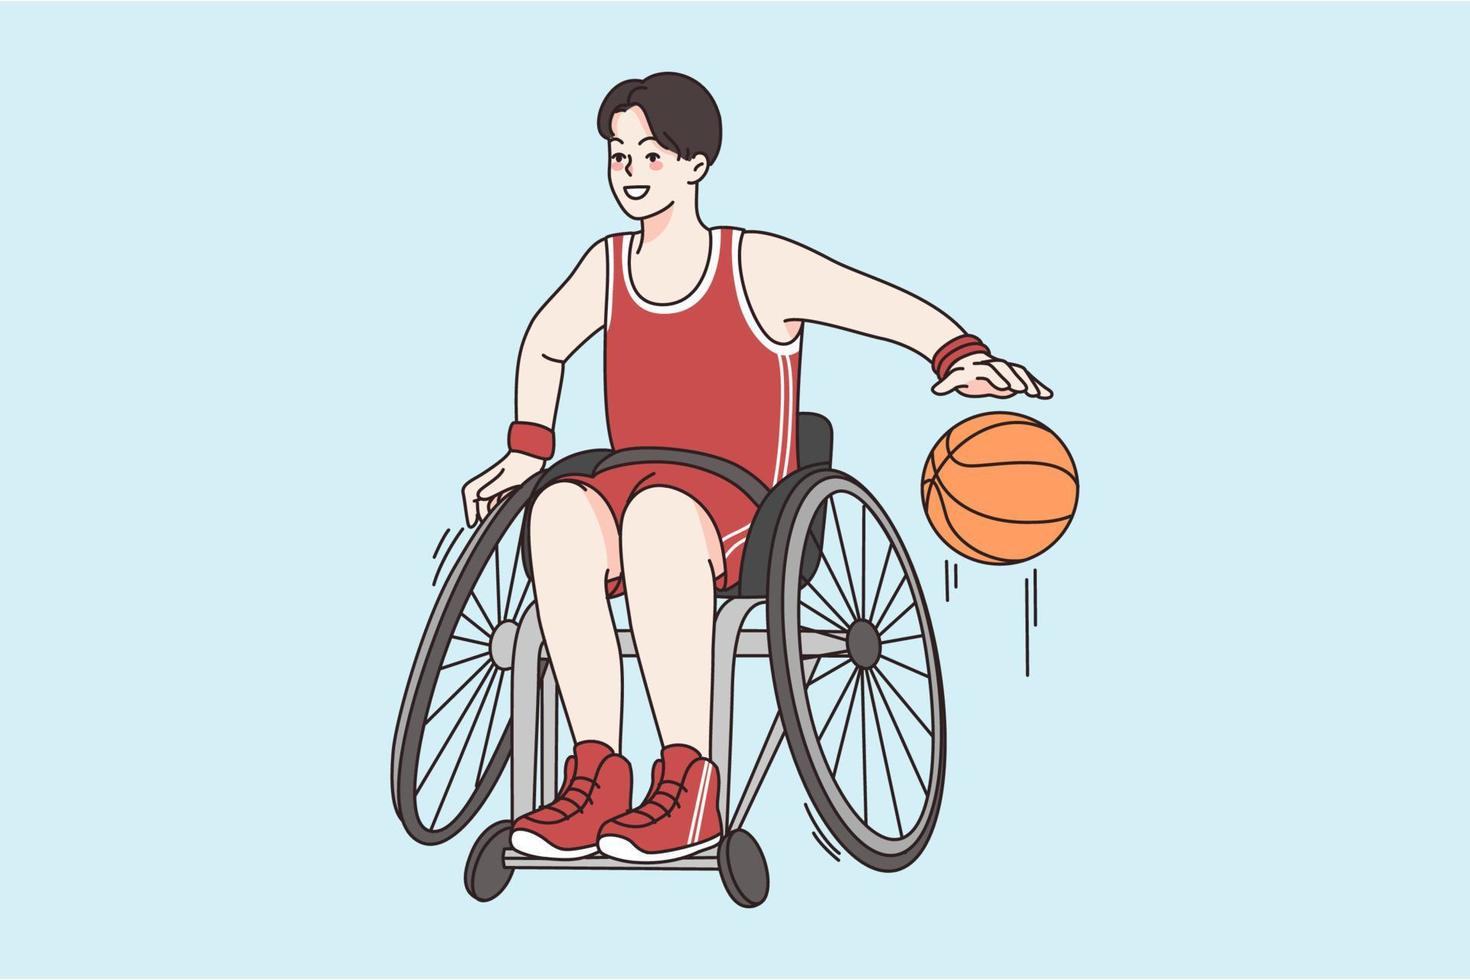 activo estilo de vida de persona concepto. joven sonriente chico en silla de ruedas sentado jugando baloncesto disfrutando deportivo estilo de vida vector ilustración